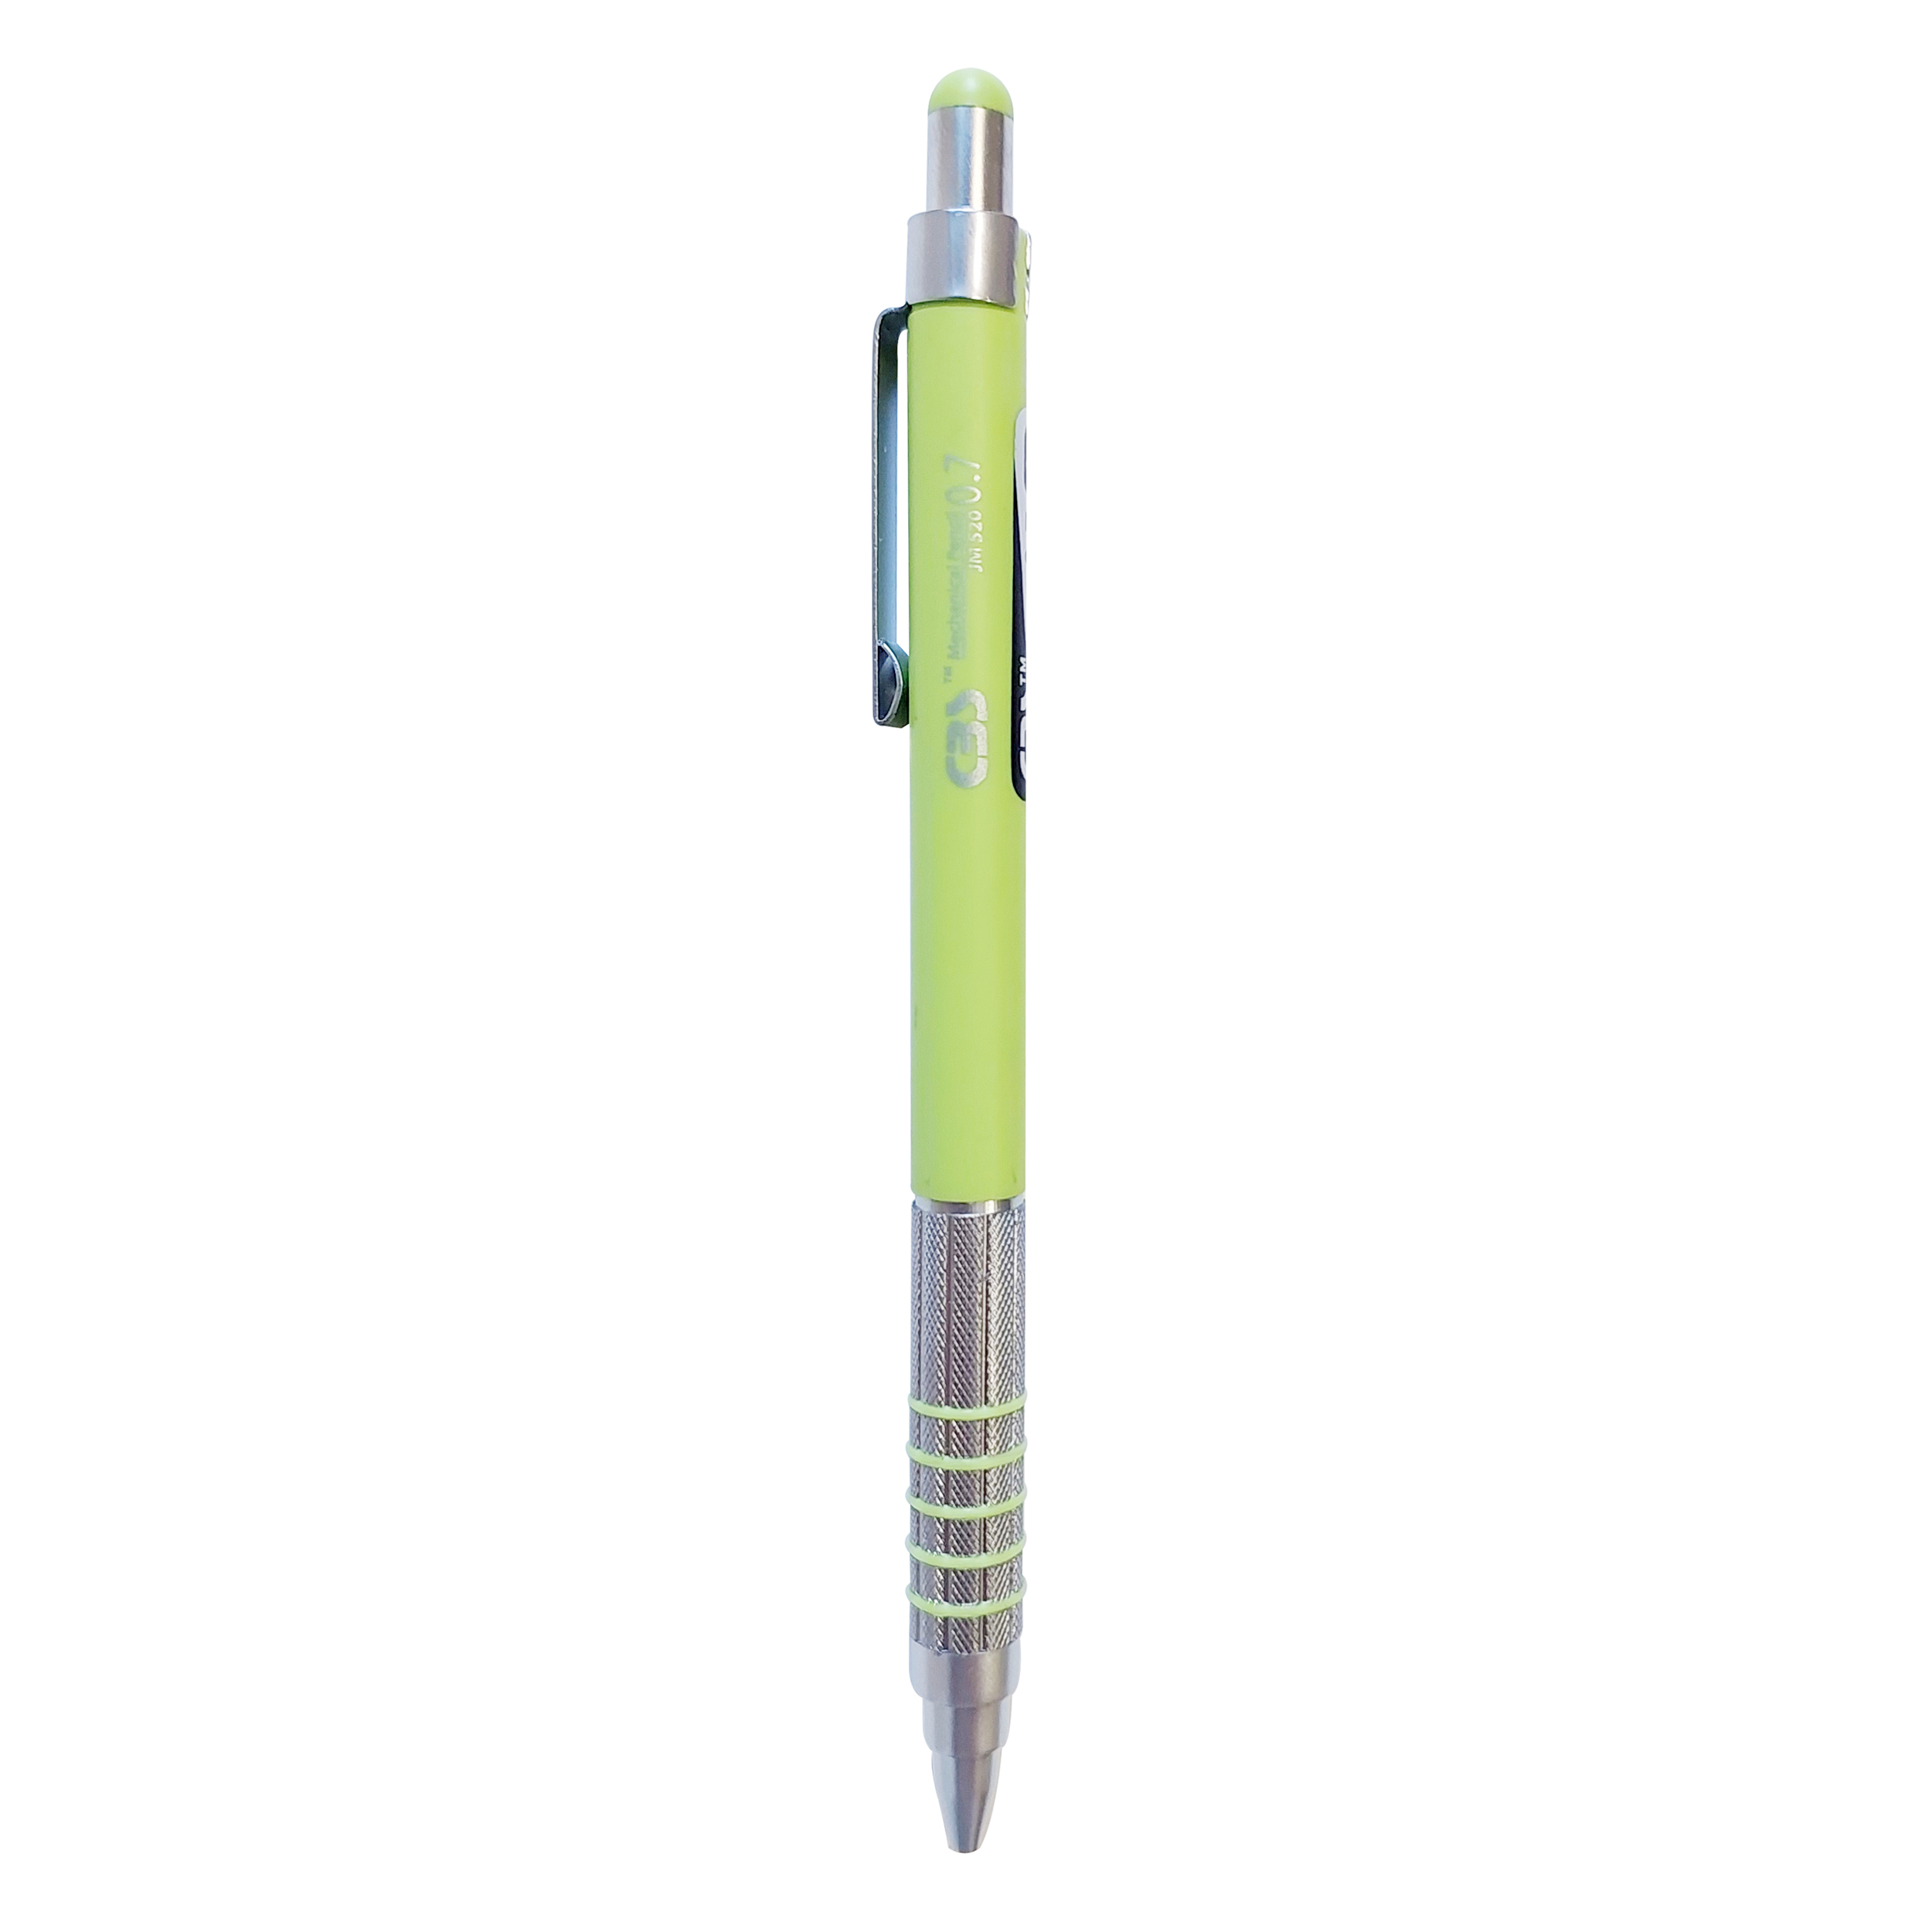 مداد نوکی 0.7 میلی متری سی بی اس مدل Grip